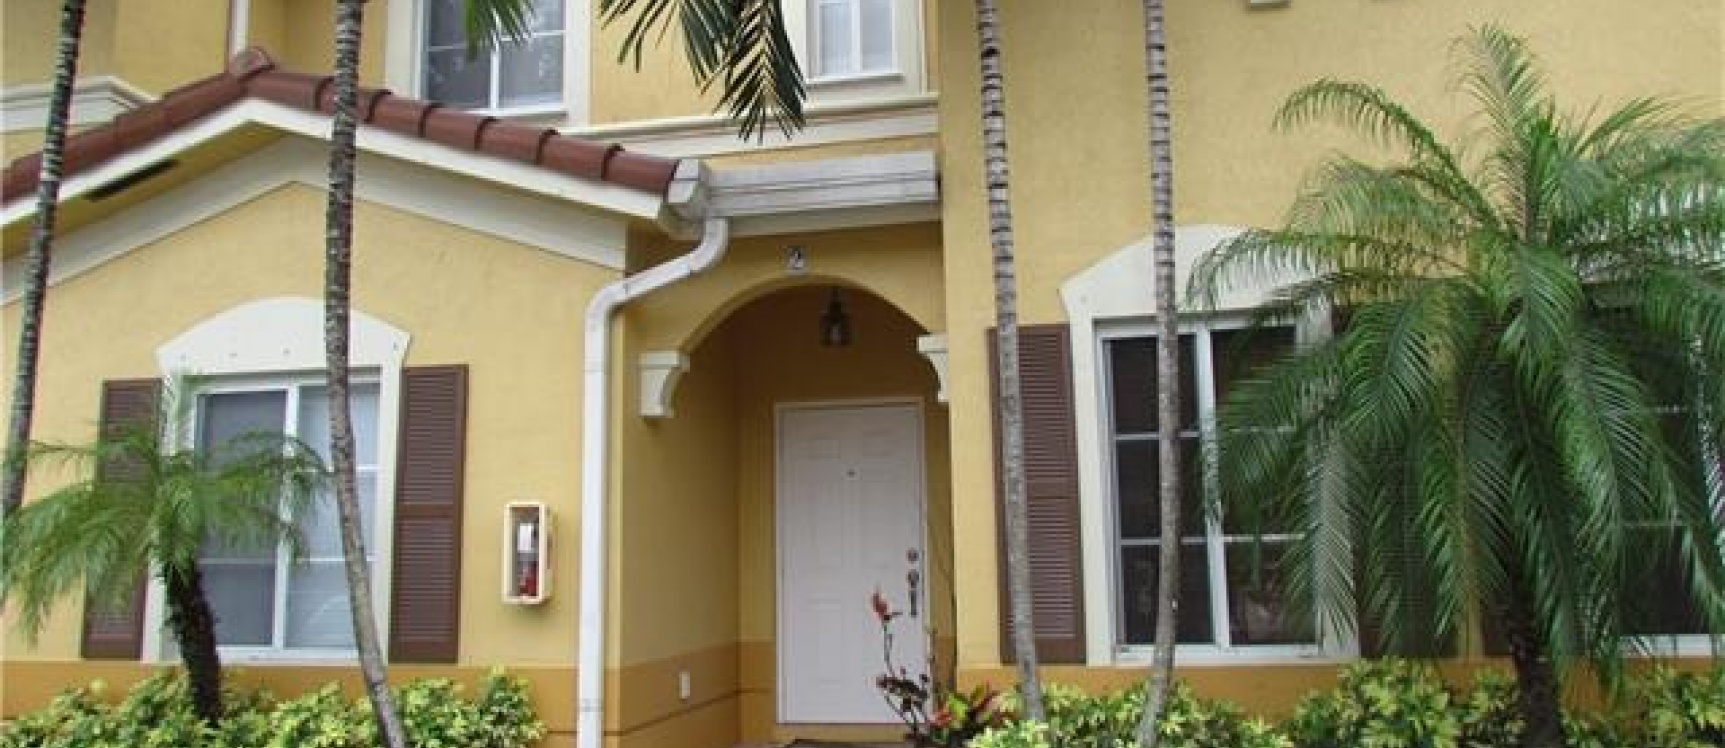 GeoBienes - Townhouse en Venta- Leeward Islands at DORAL - Plusvalia Guayaquil Casas de venta y alquiler Inmobiliaria Ecuador